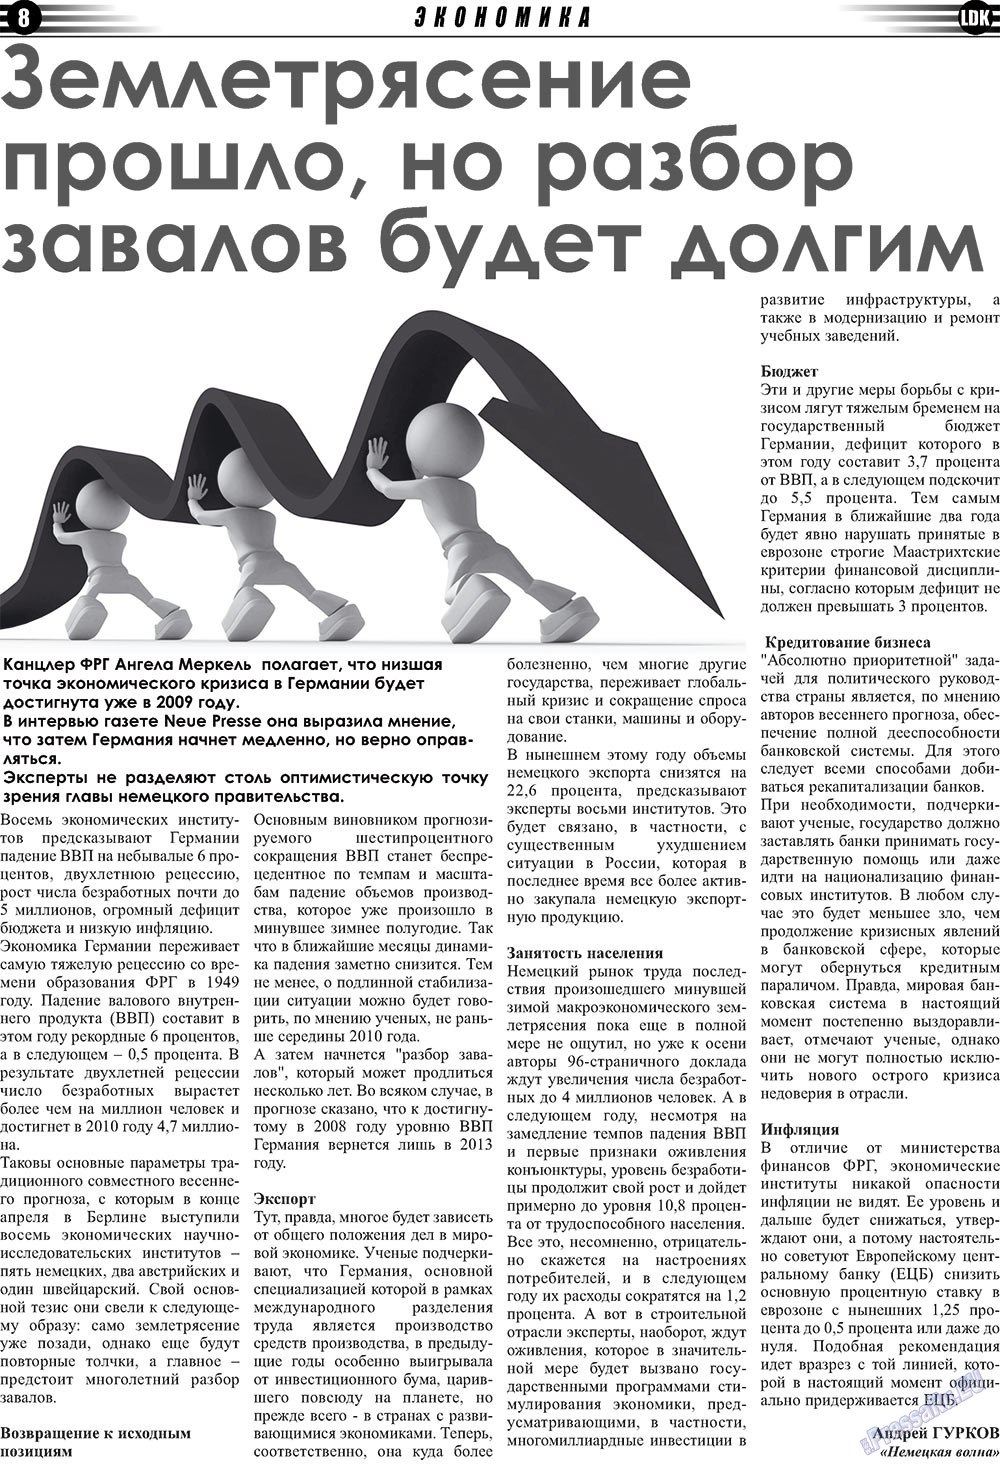 LDK по-русски (газета). 2009 год, номер 5, стр. 8